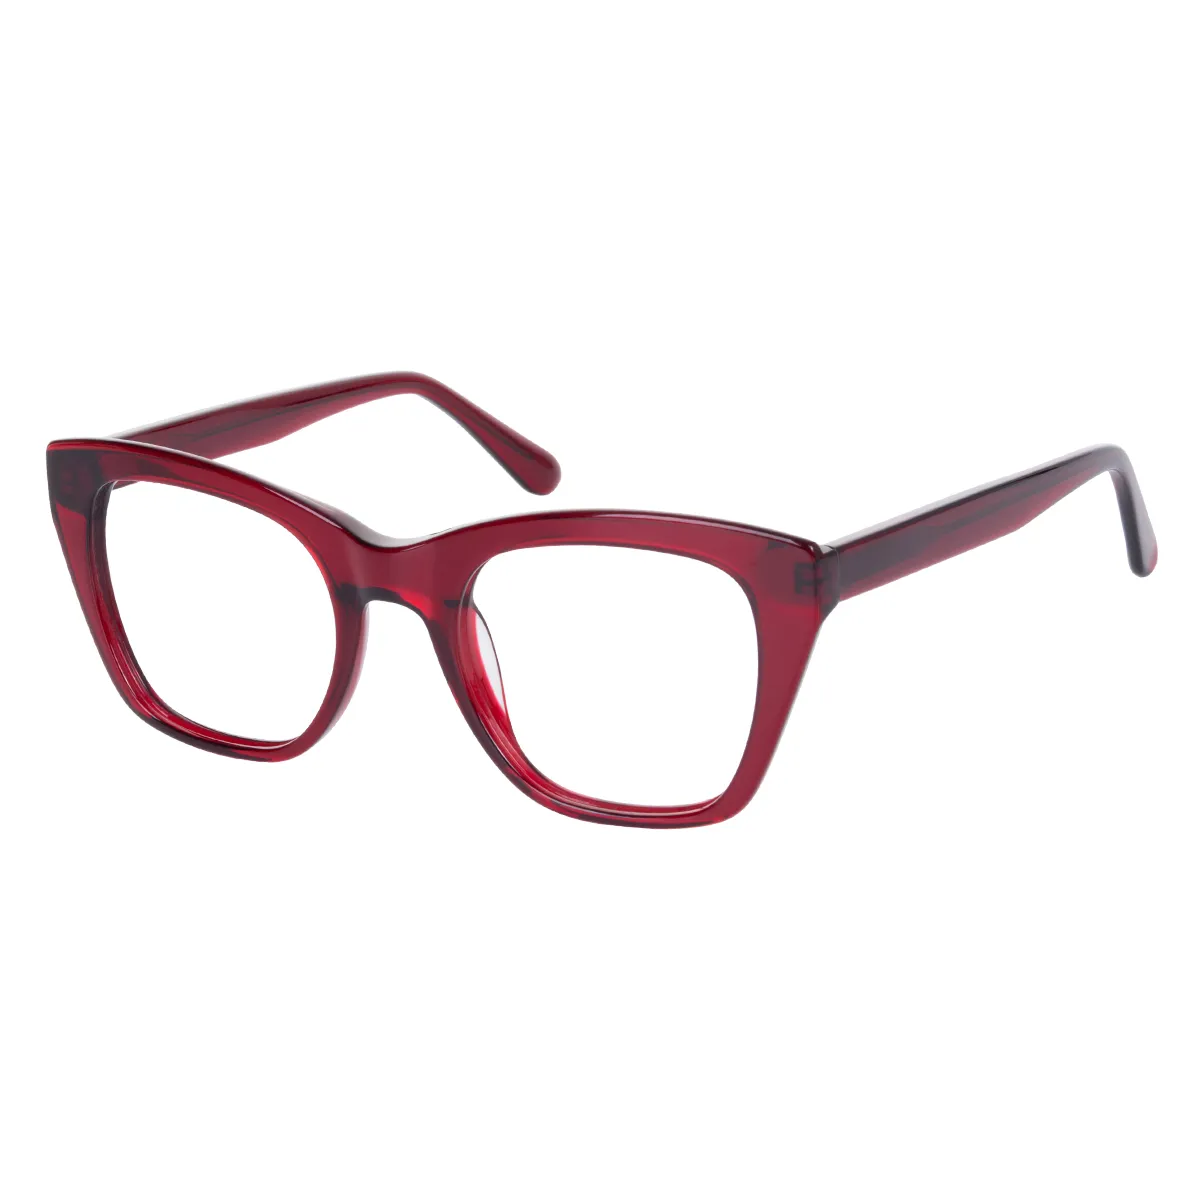 Hadley - Square Red Glasses for Men & Women